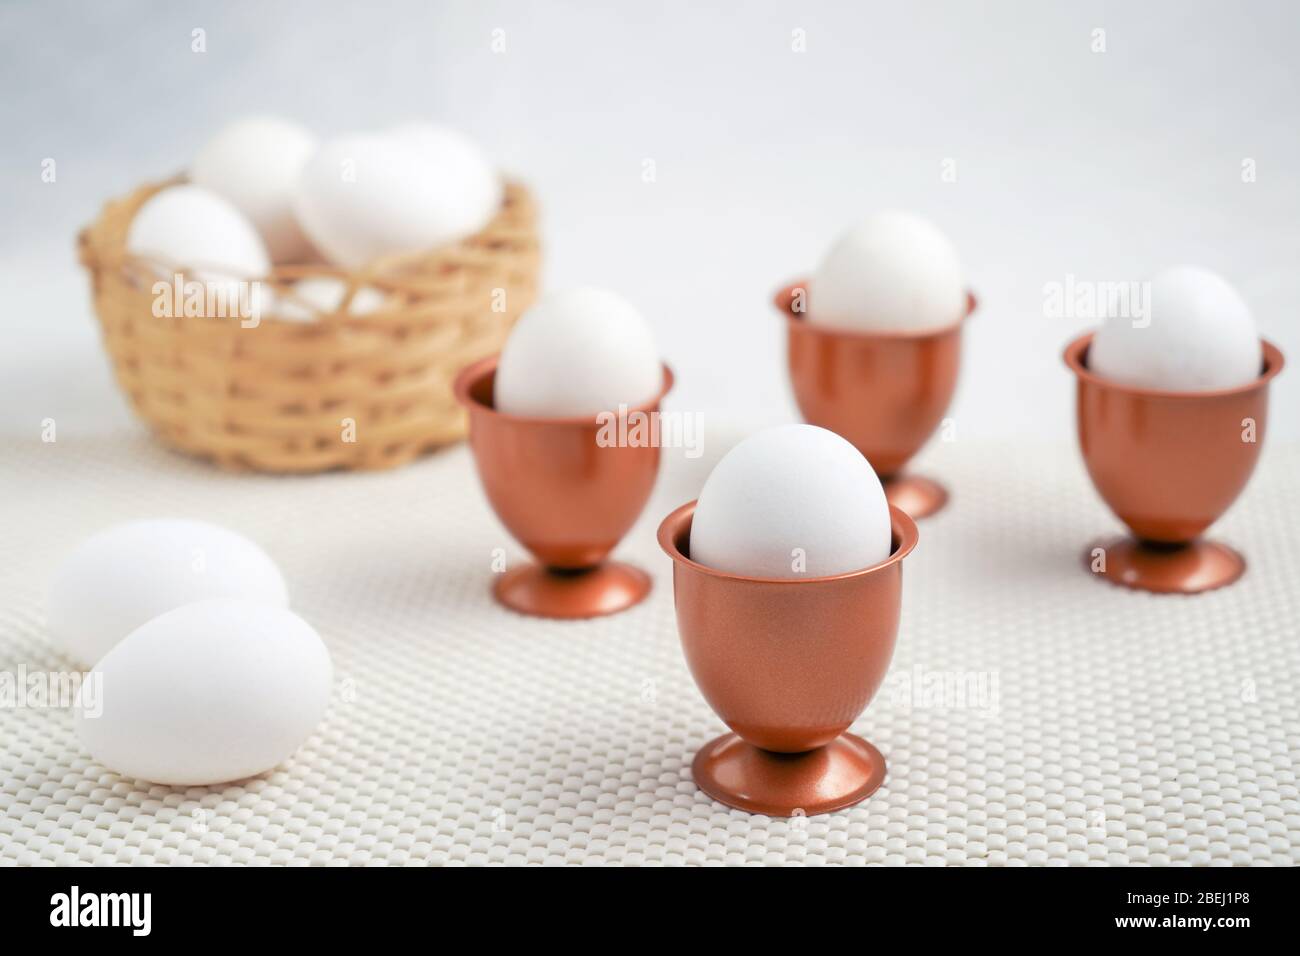 Un oeuf dans une tasse d'œufs cooper et trois autres tasses d'œufs cooper  avec un oeuf chacun et un panier avec des œufs au fond Photo Stock - Alamy